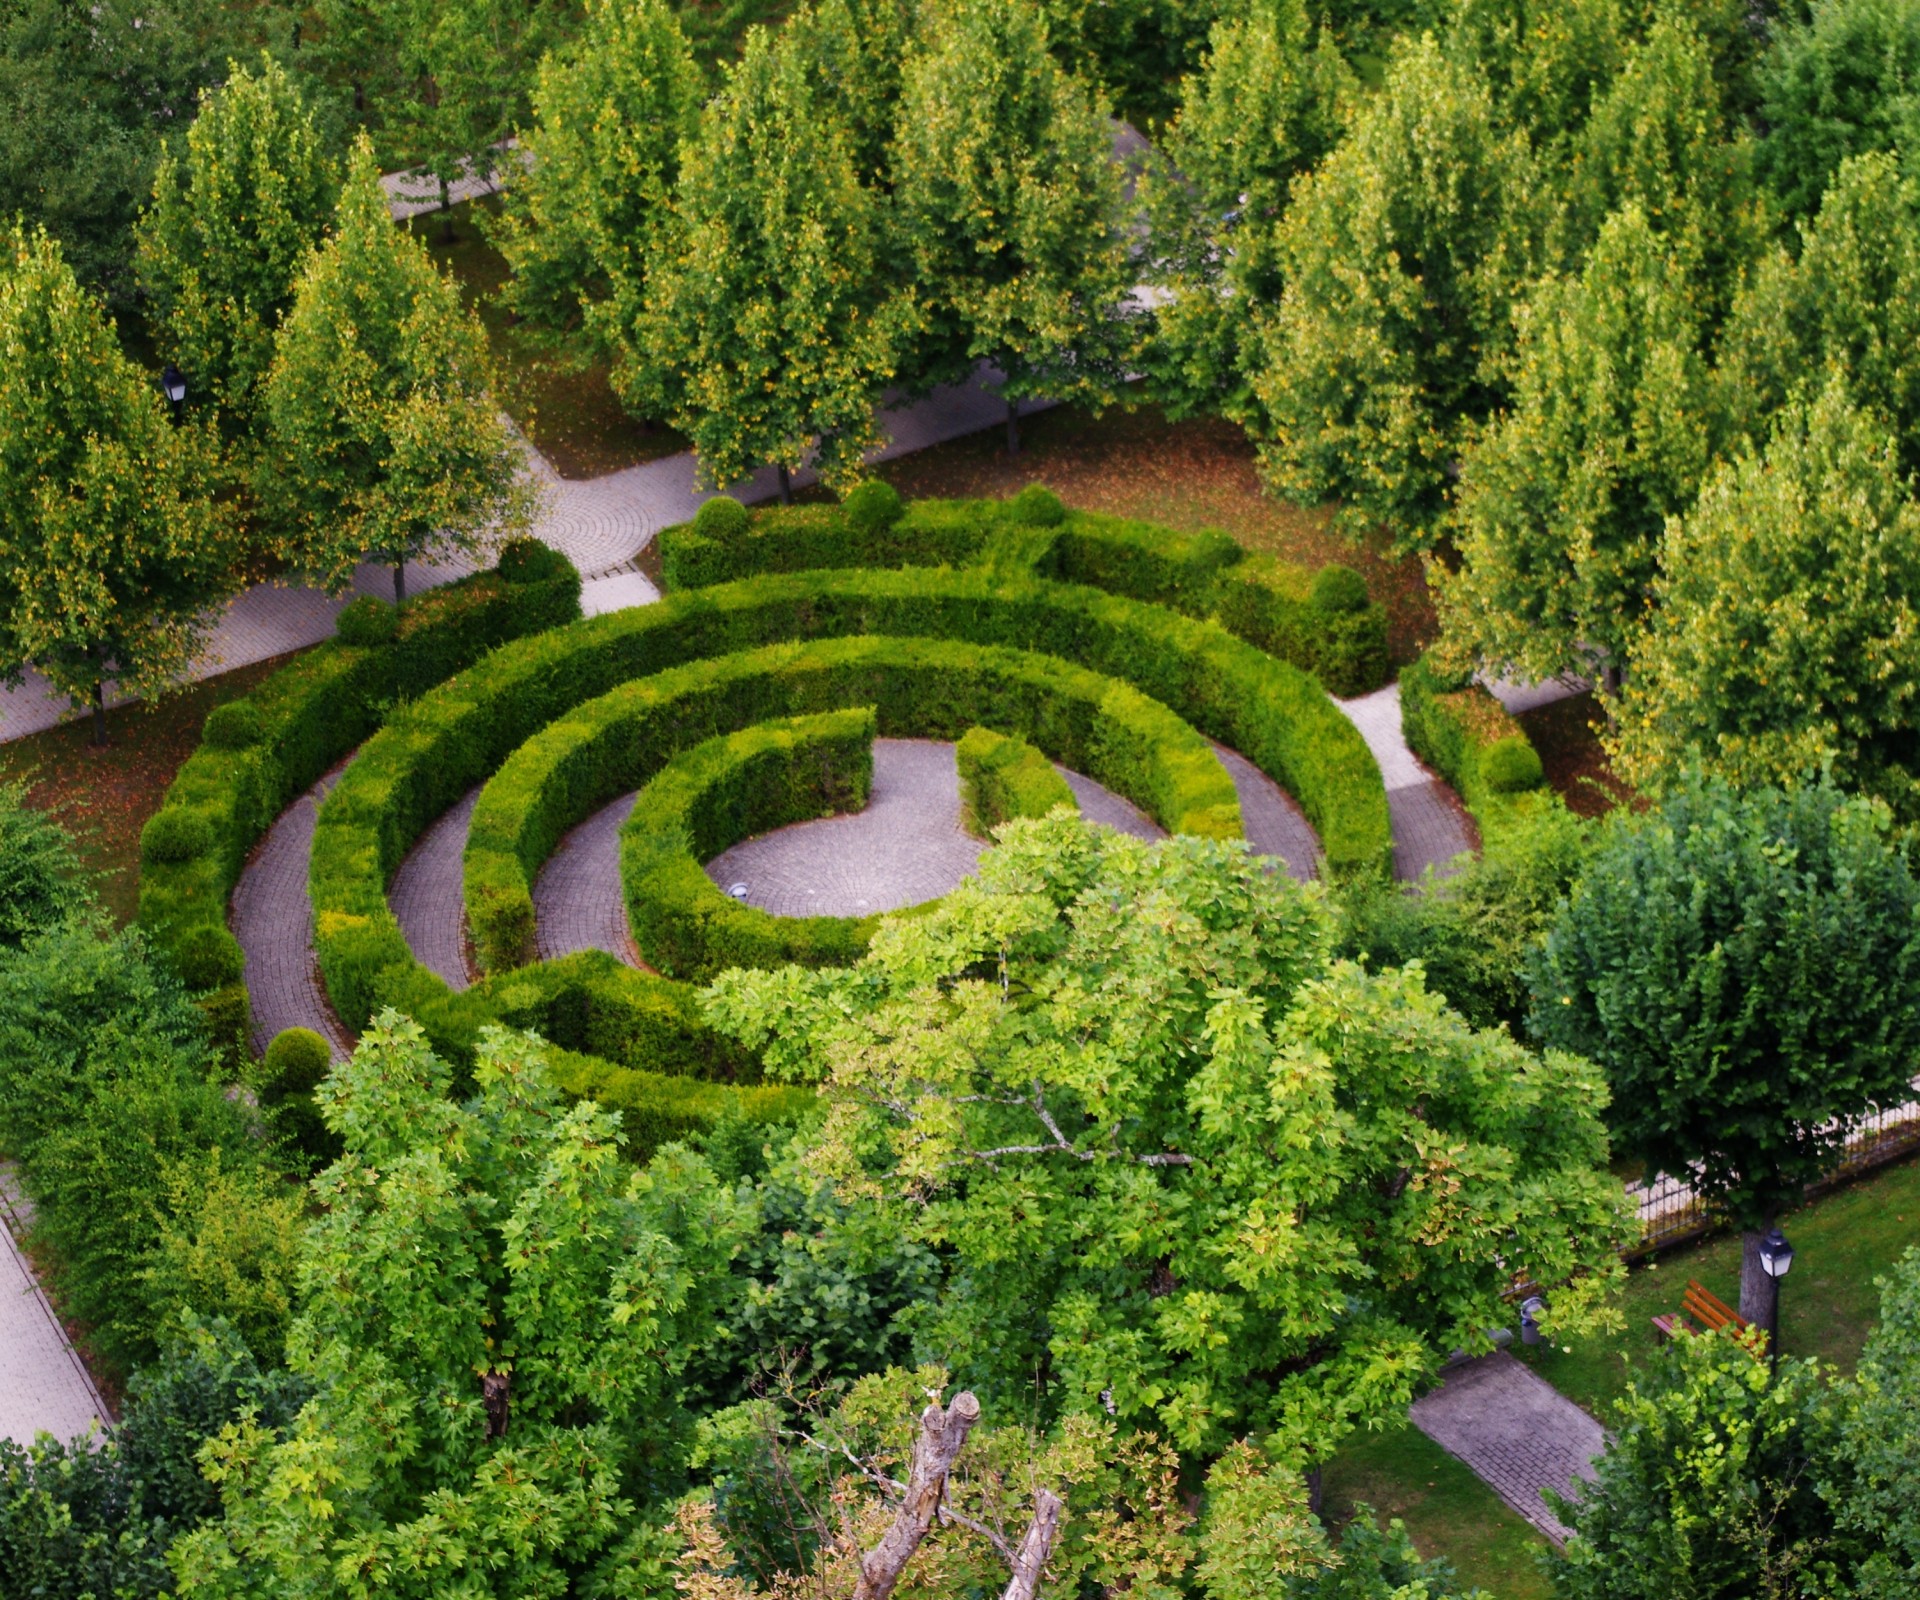 green labyrinth maze free photo